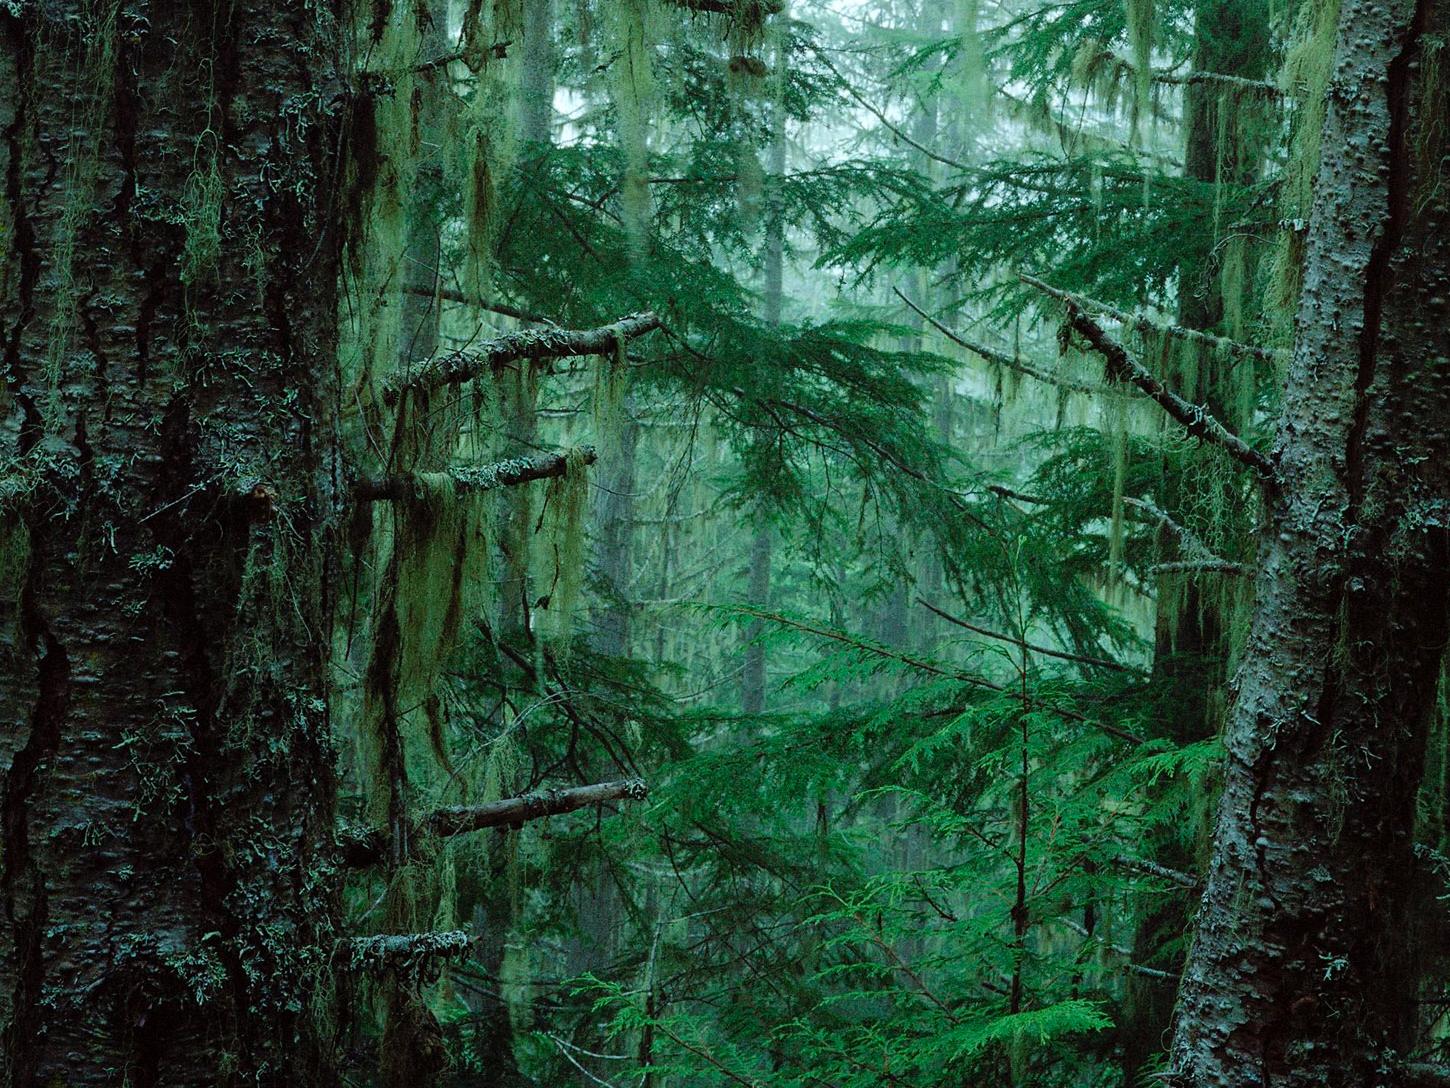 静谧的原始森林,天然的恐怖地带